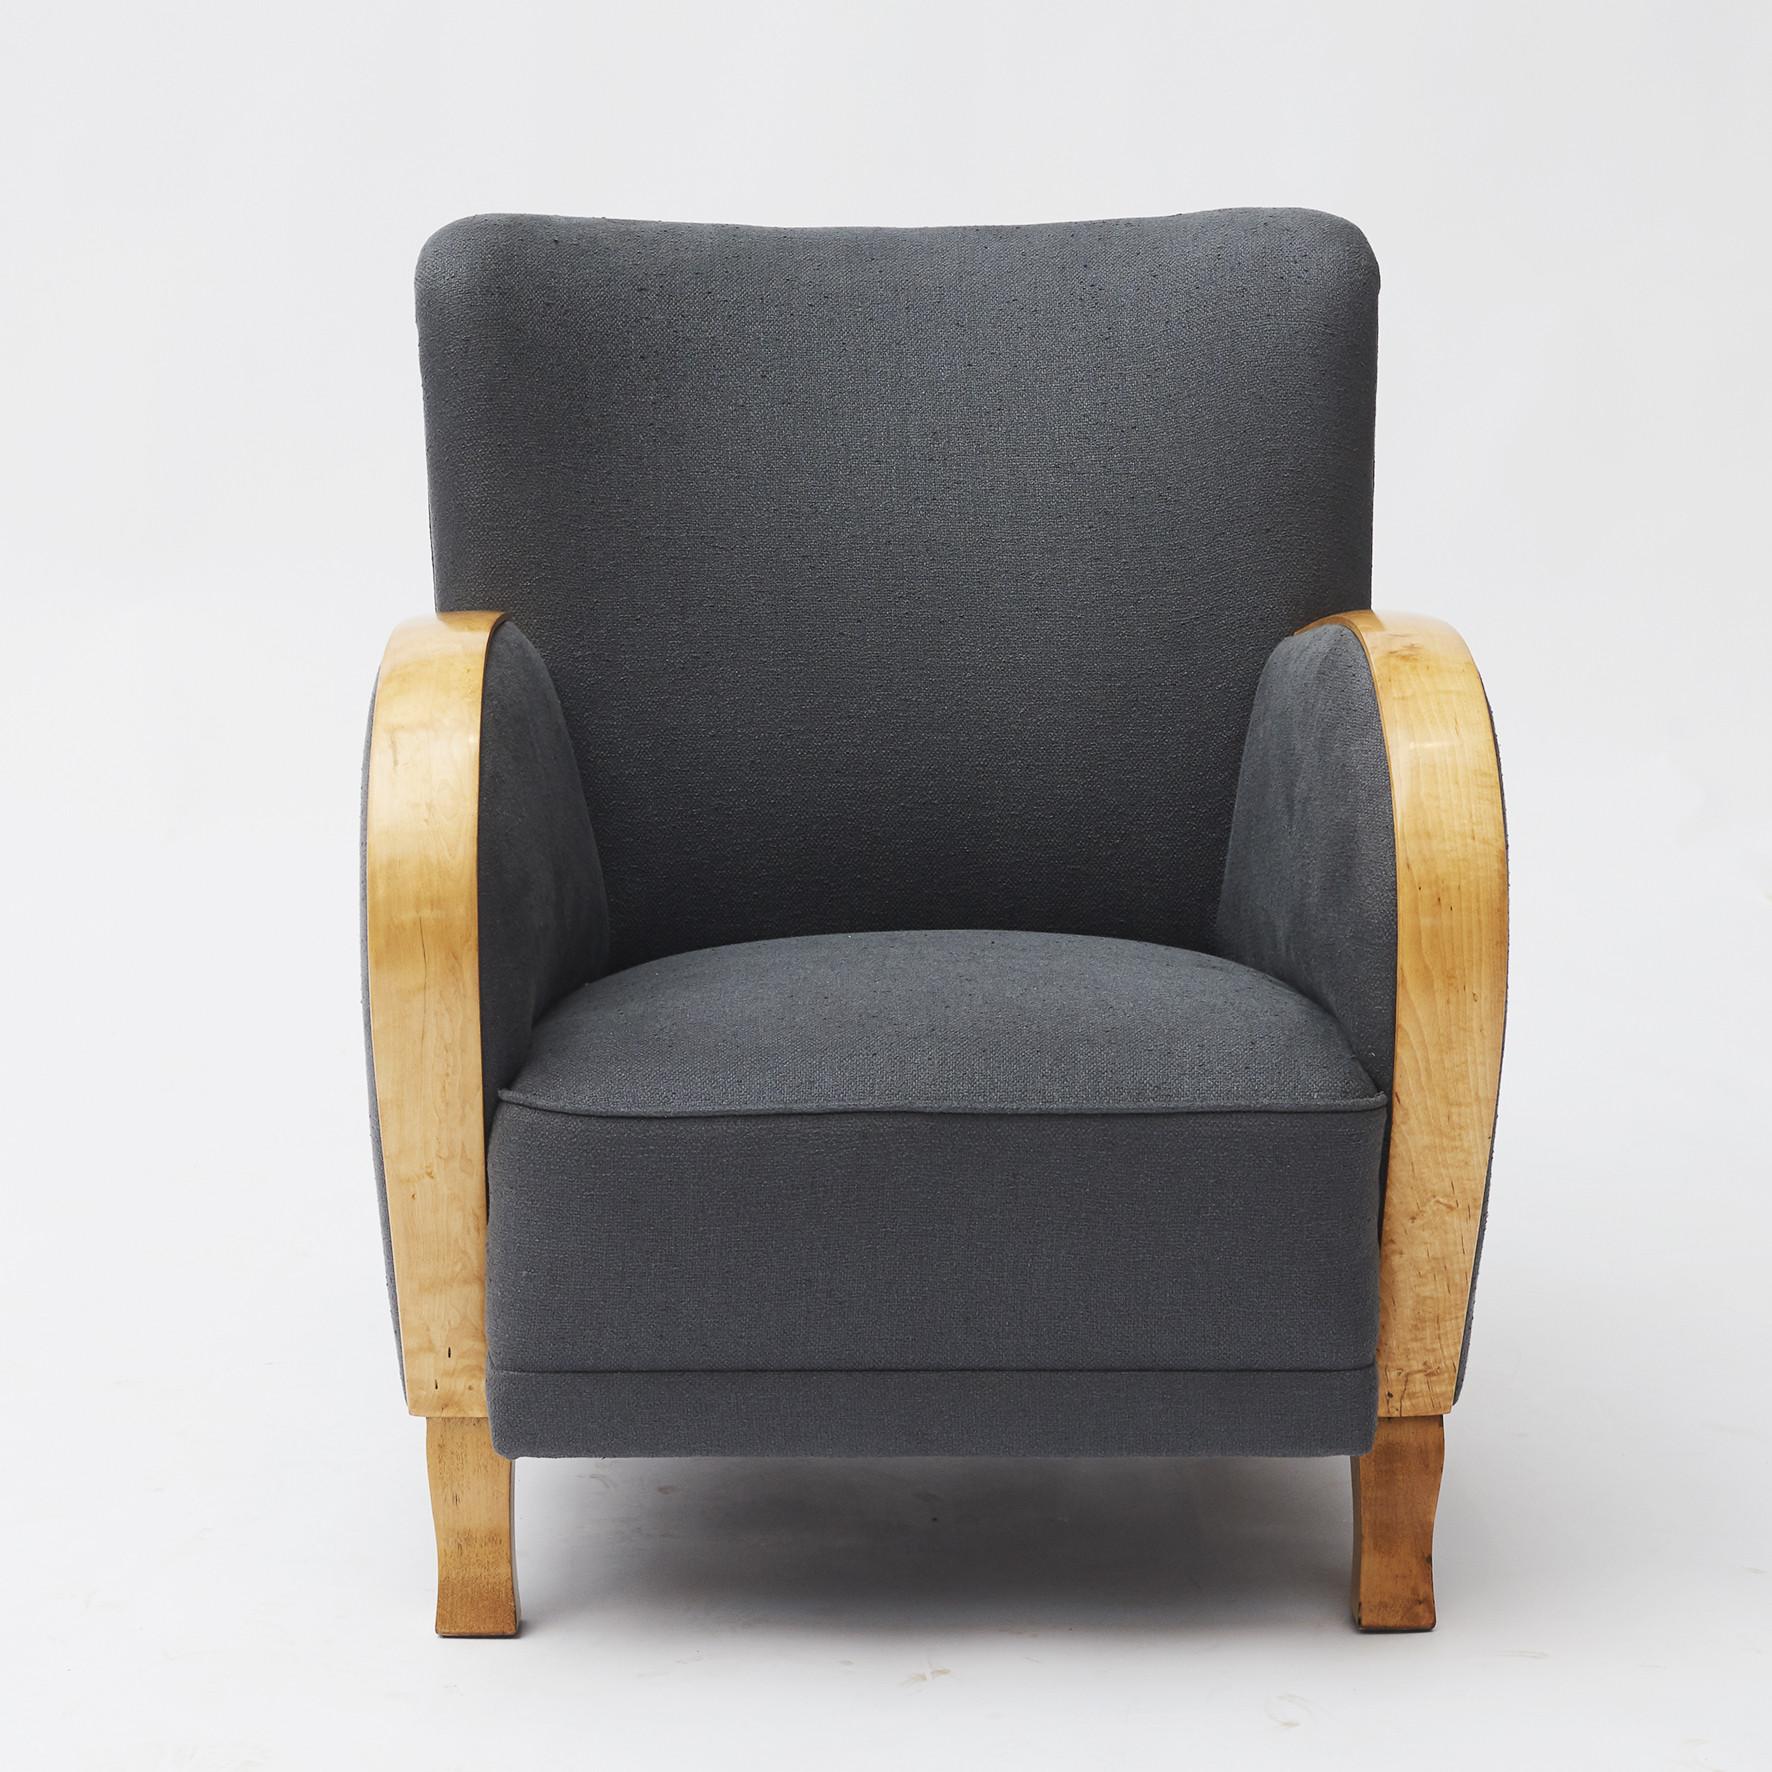 Paar schwedische Art Deco Sessel. Armlehne und Beine aus Birkenholz, Sitz mit Federn.
Neu gepolstert mit petrolgrauem Leinenmischgewebe von Pierre Frey.
Schweden, um 1930.
Wird als Paar verkauft.